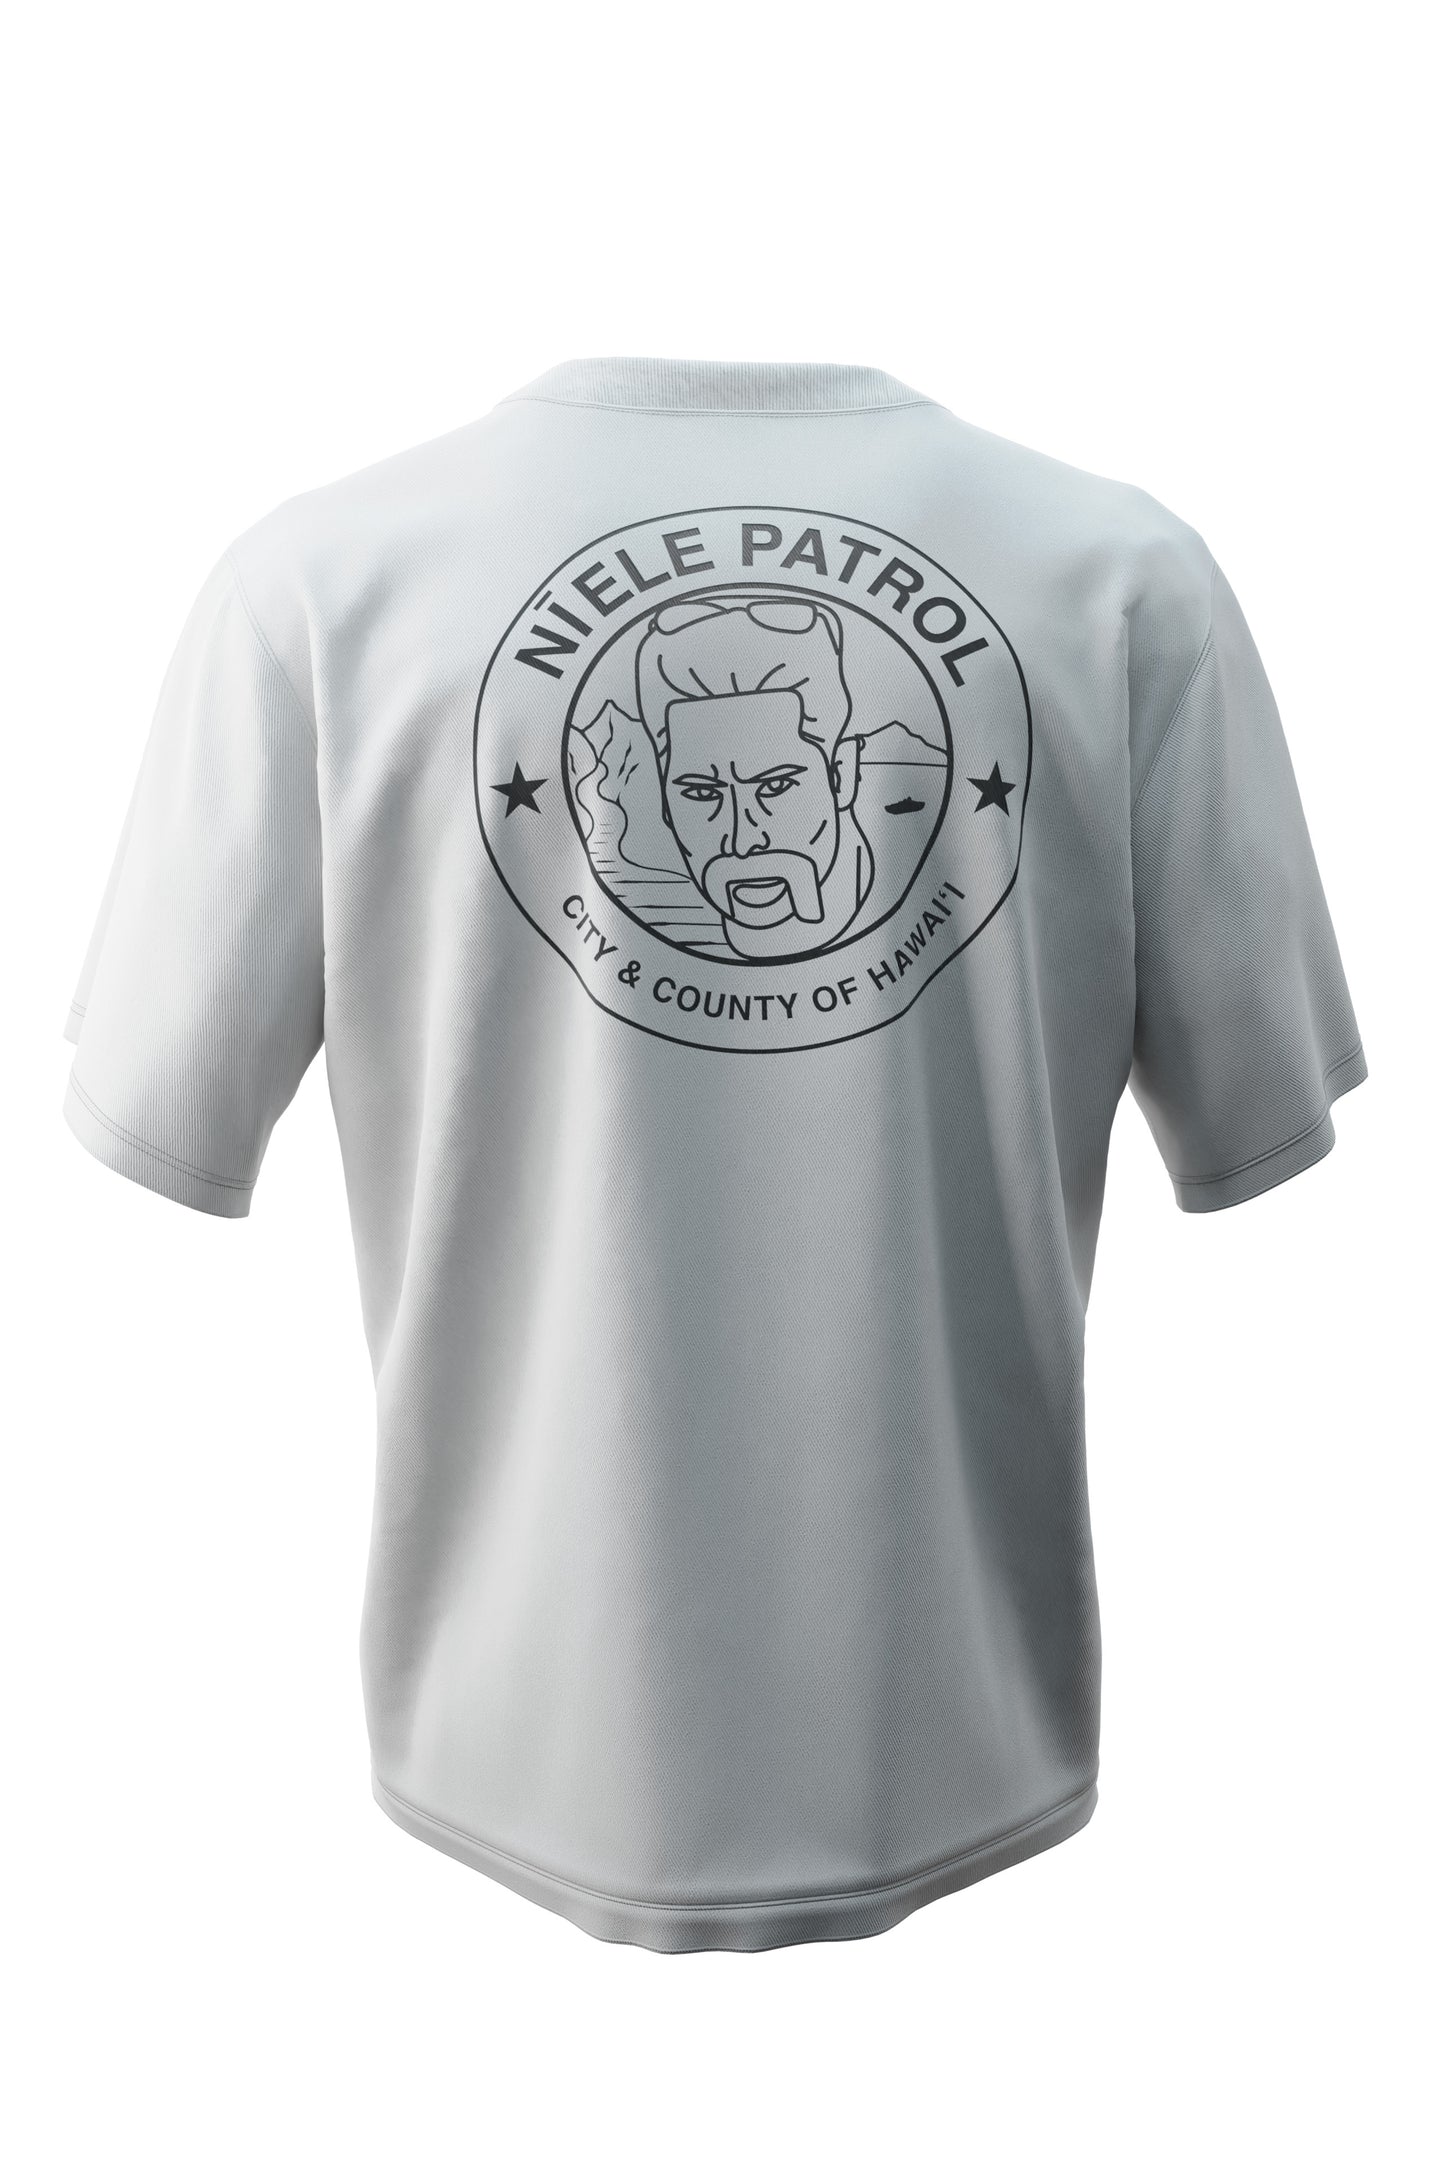 Niele Patrol Shirt